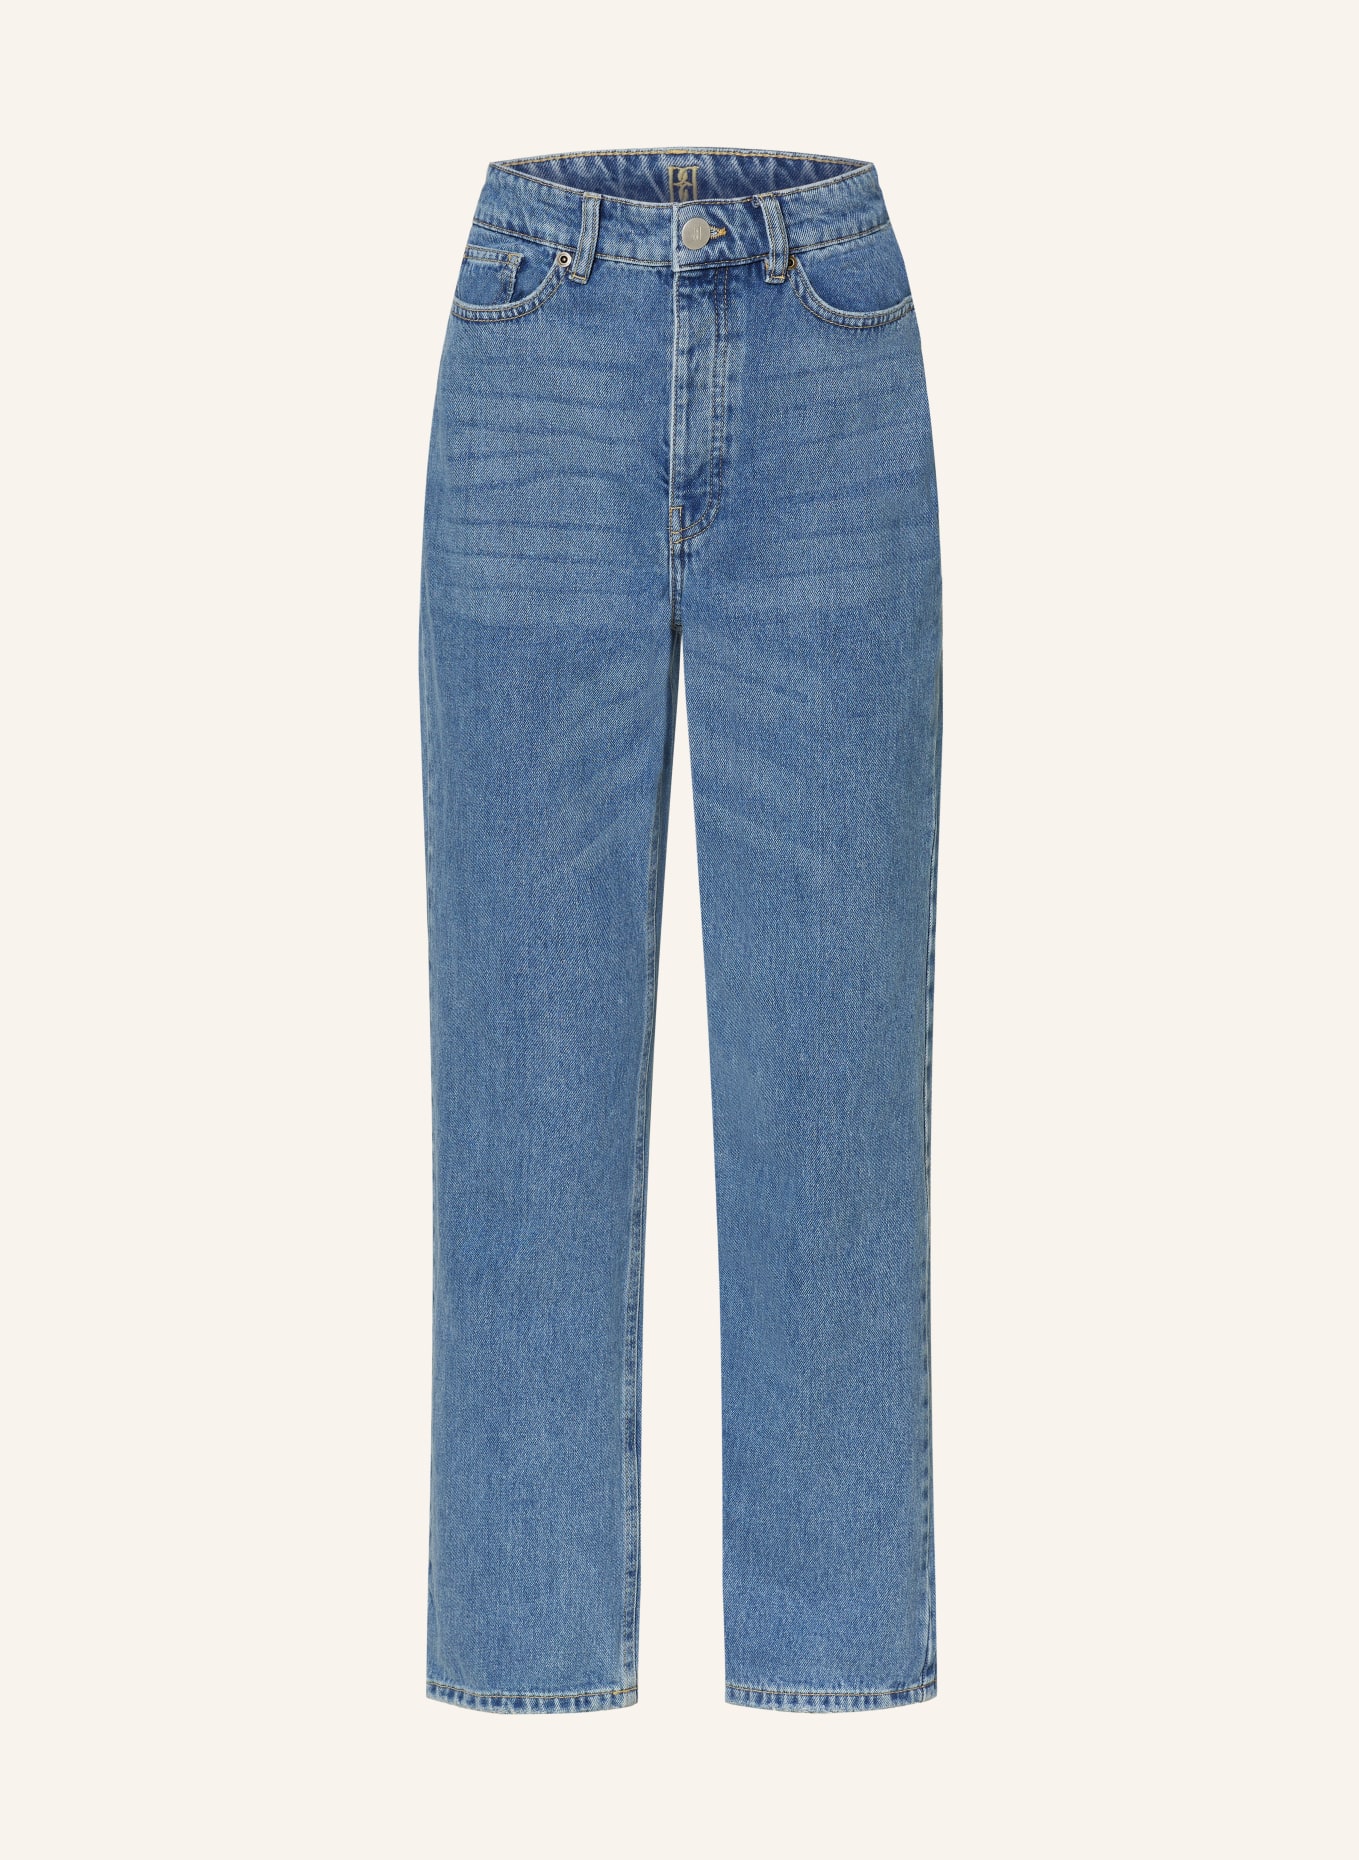 BY MALENE BIRGER Straight jeans MILIUM, Color: 23L Denim Blue (Image 1)